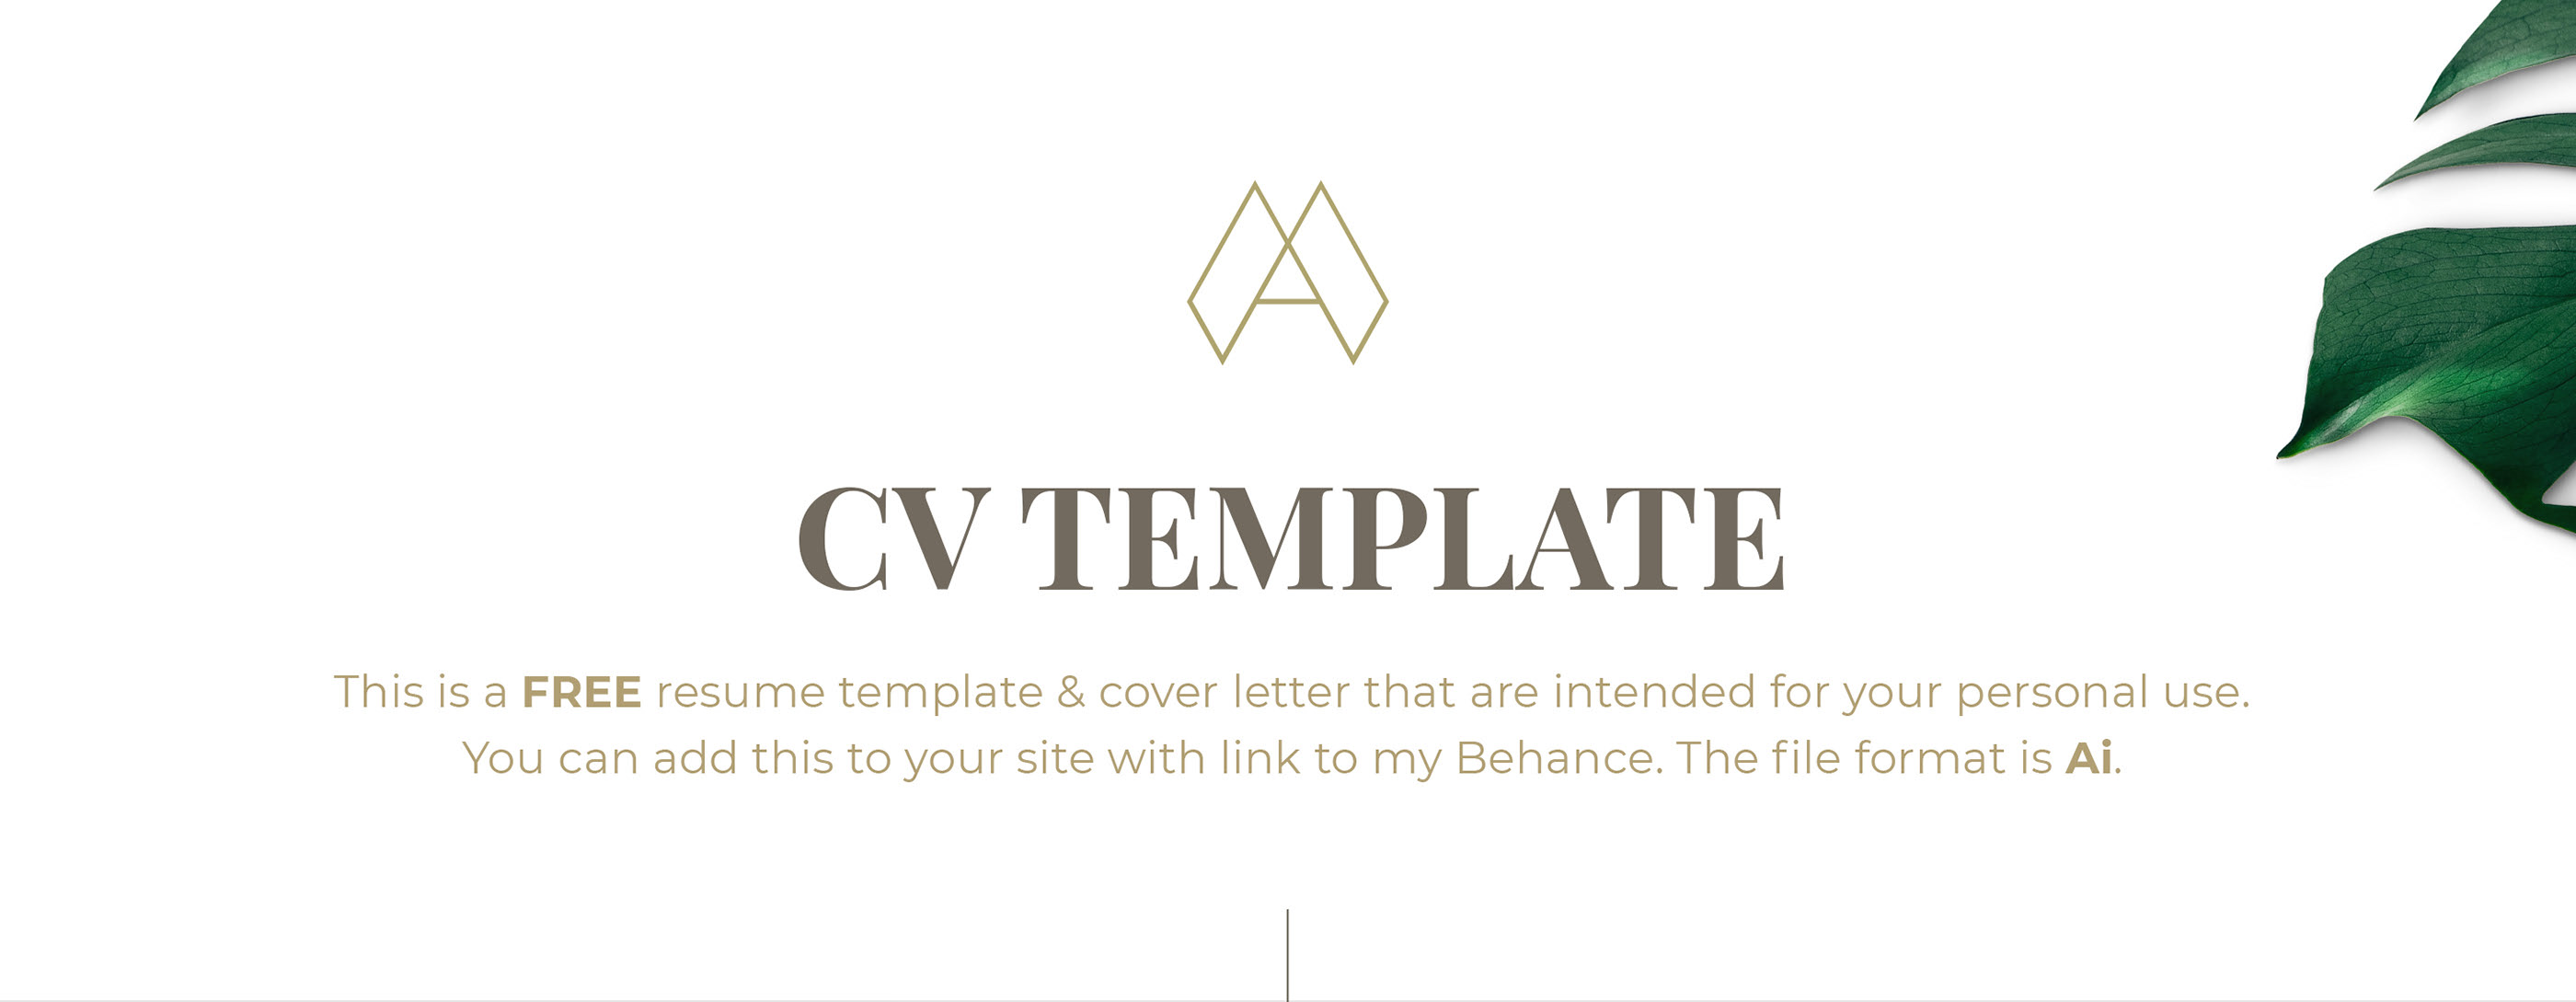 Resume Cv Cover Letter Template Free On Behance